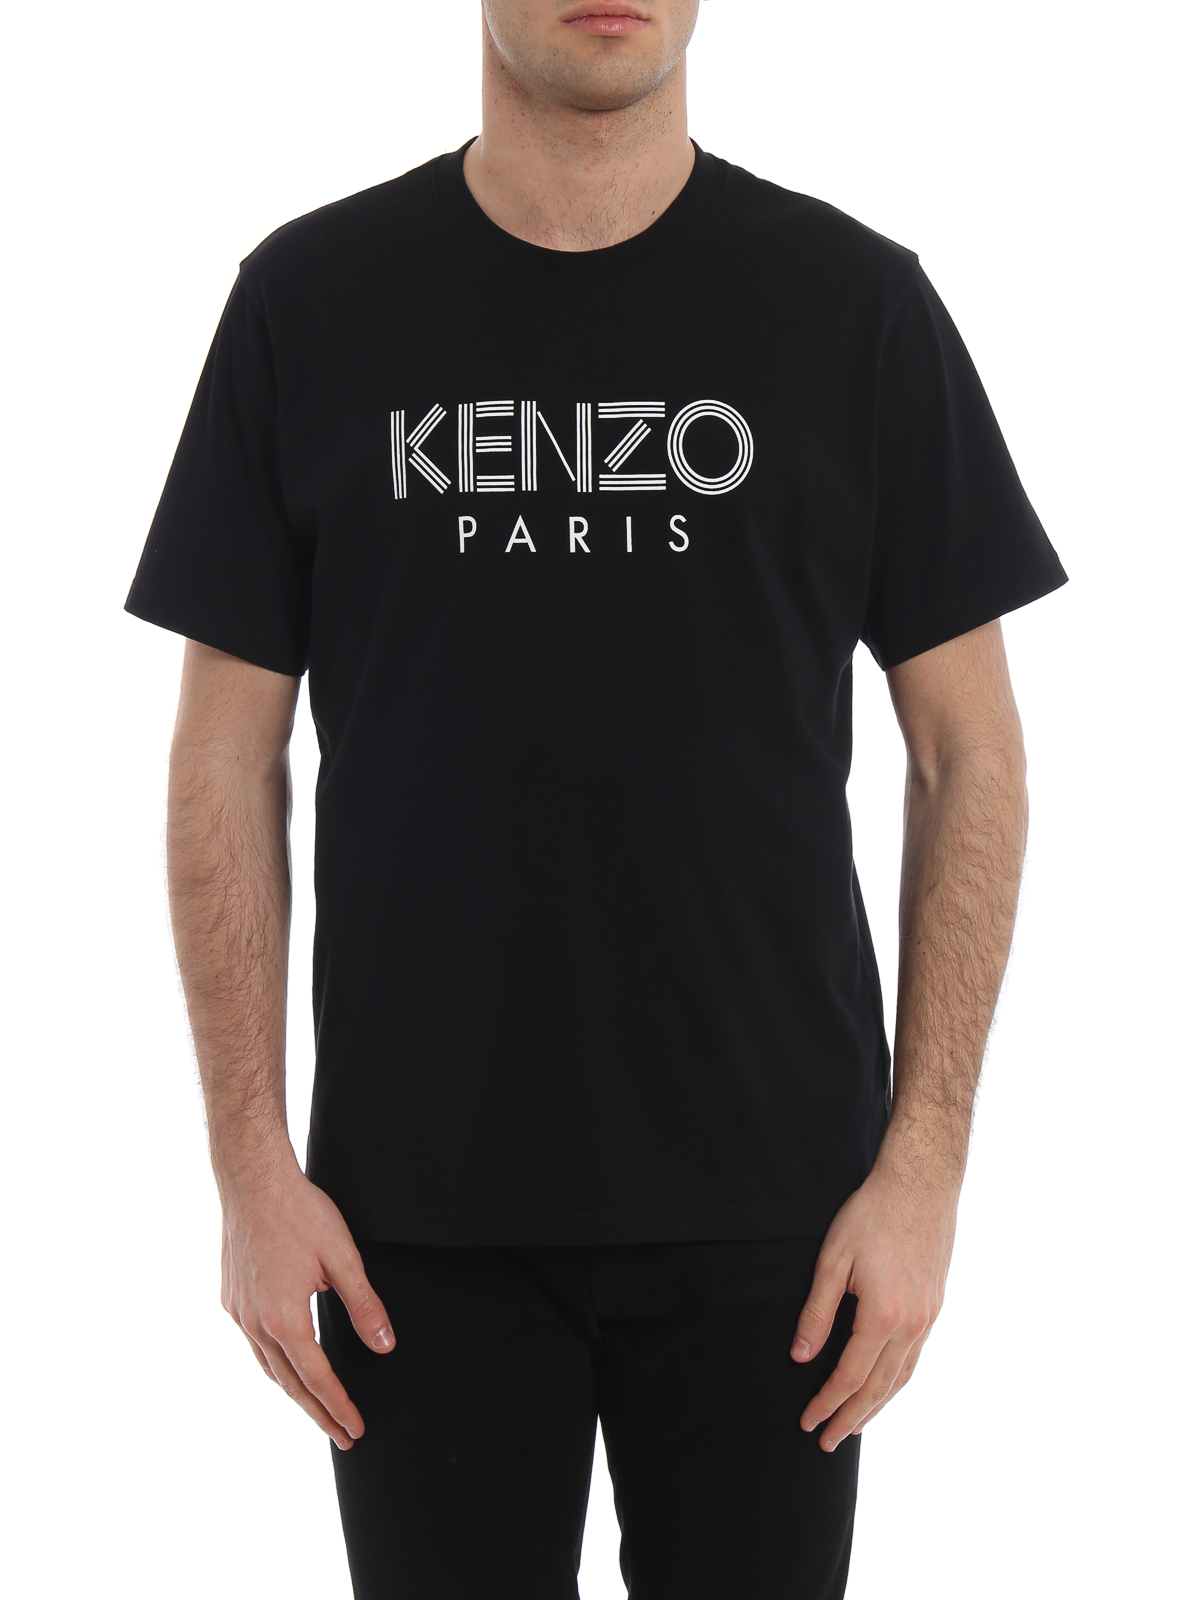 Tシャツ Kenzo - Tシャツ - Kenzo Paris - F005TS0924SG99 | iKRIX.com